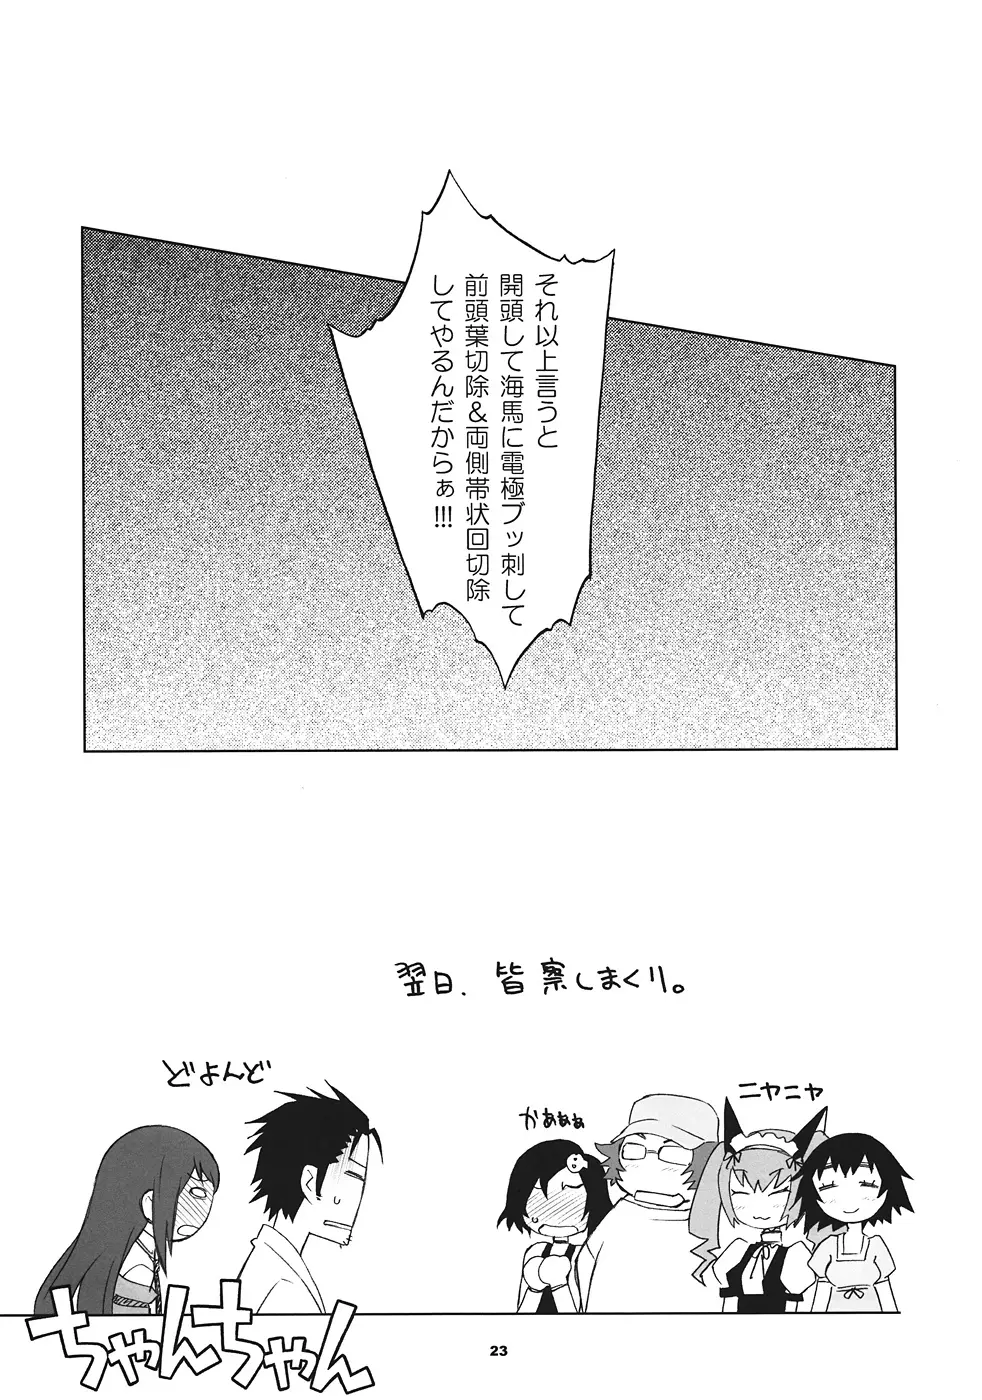 Sitainsu;Kedo シタインス・ケード 03 22ページ